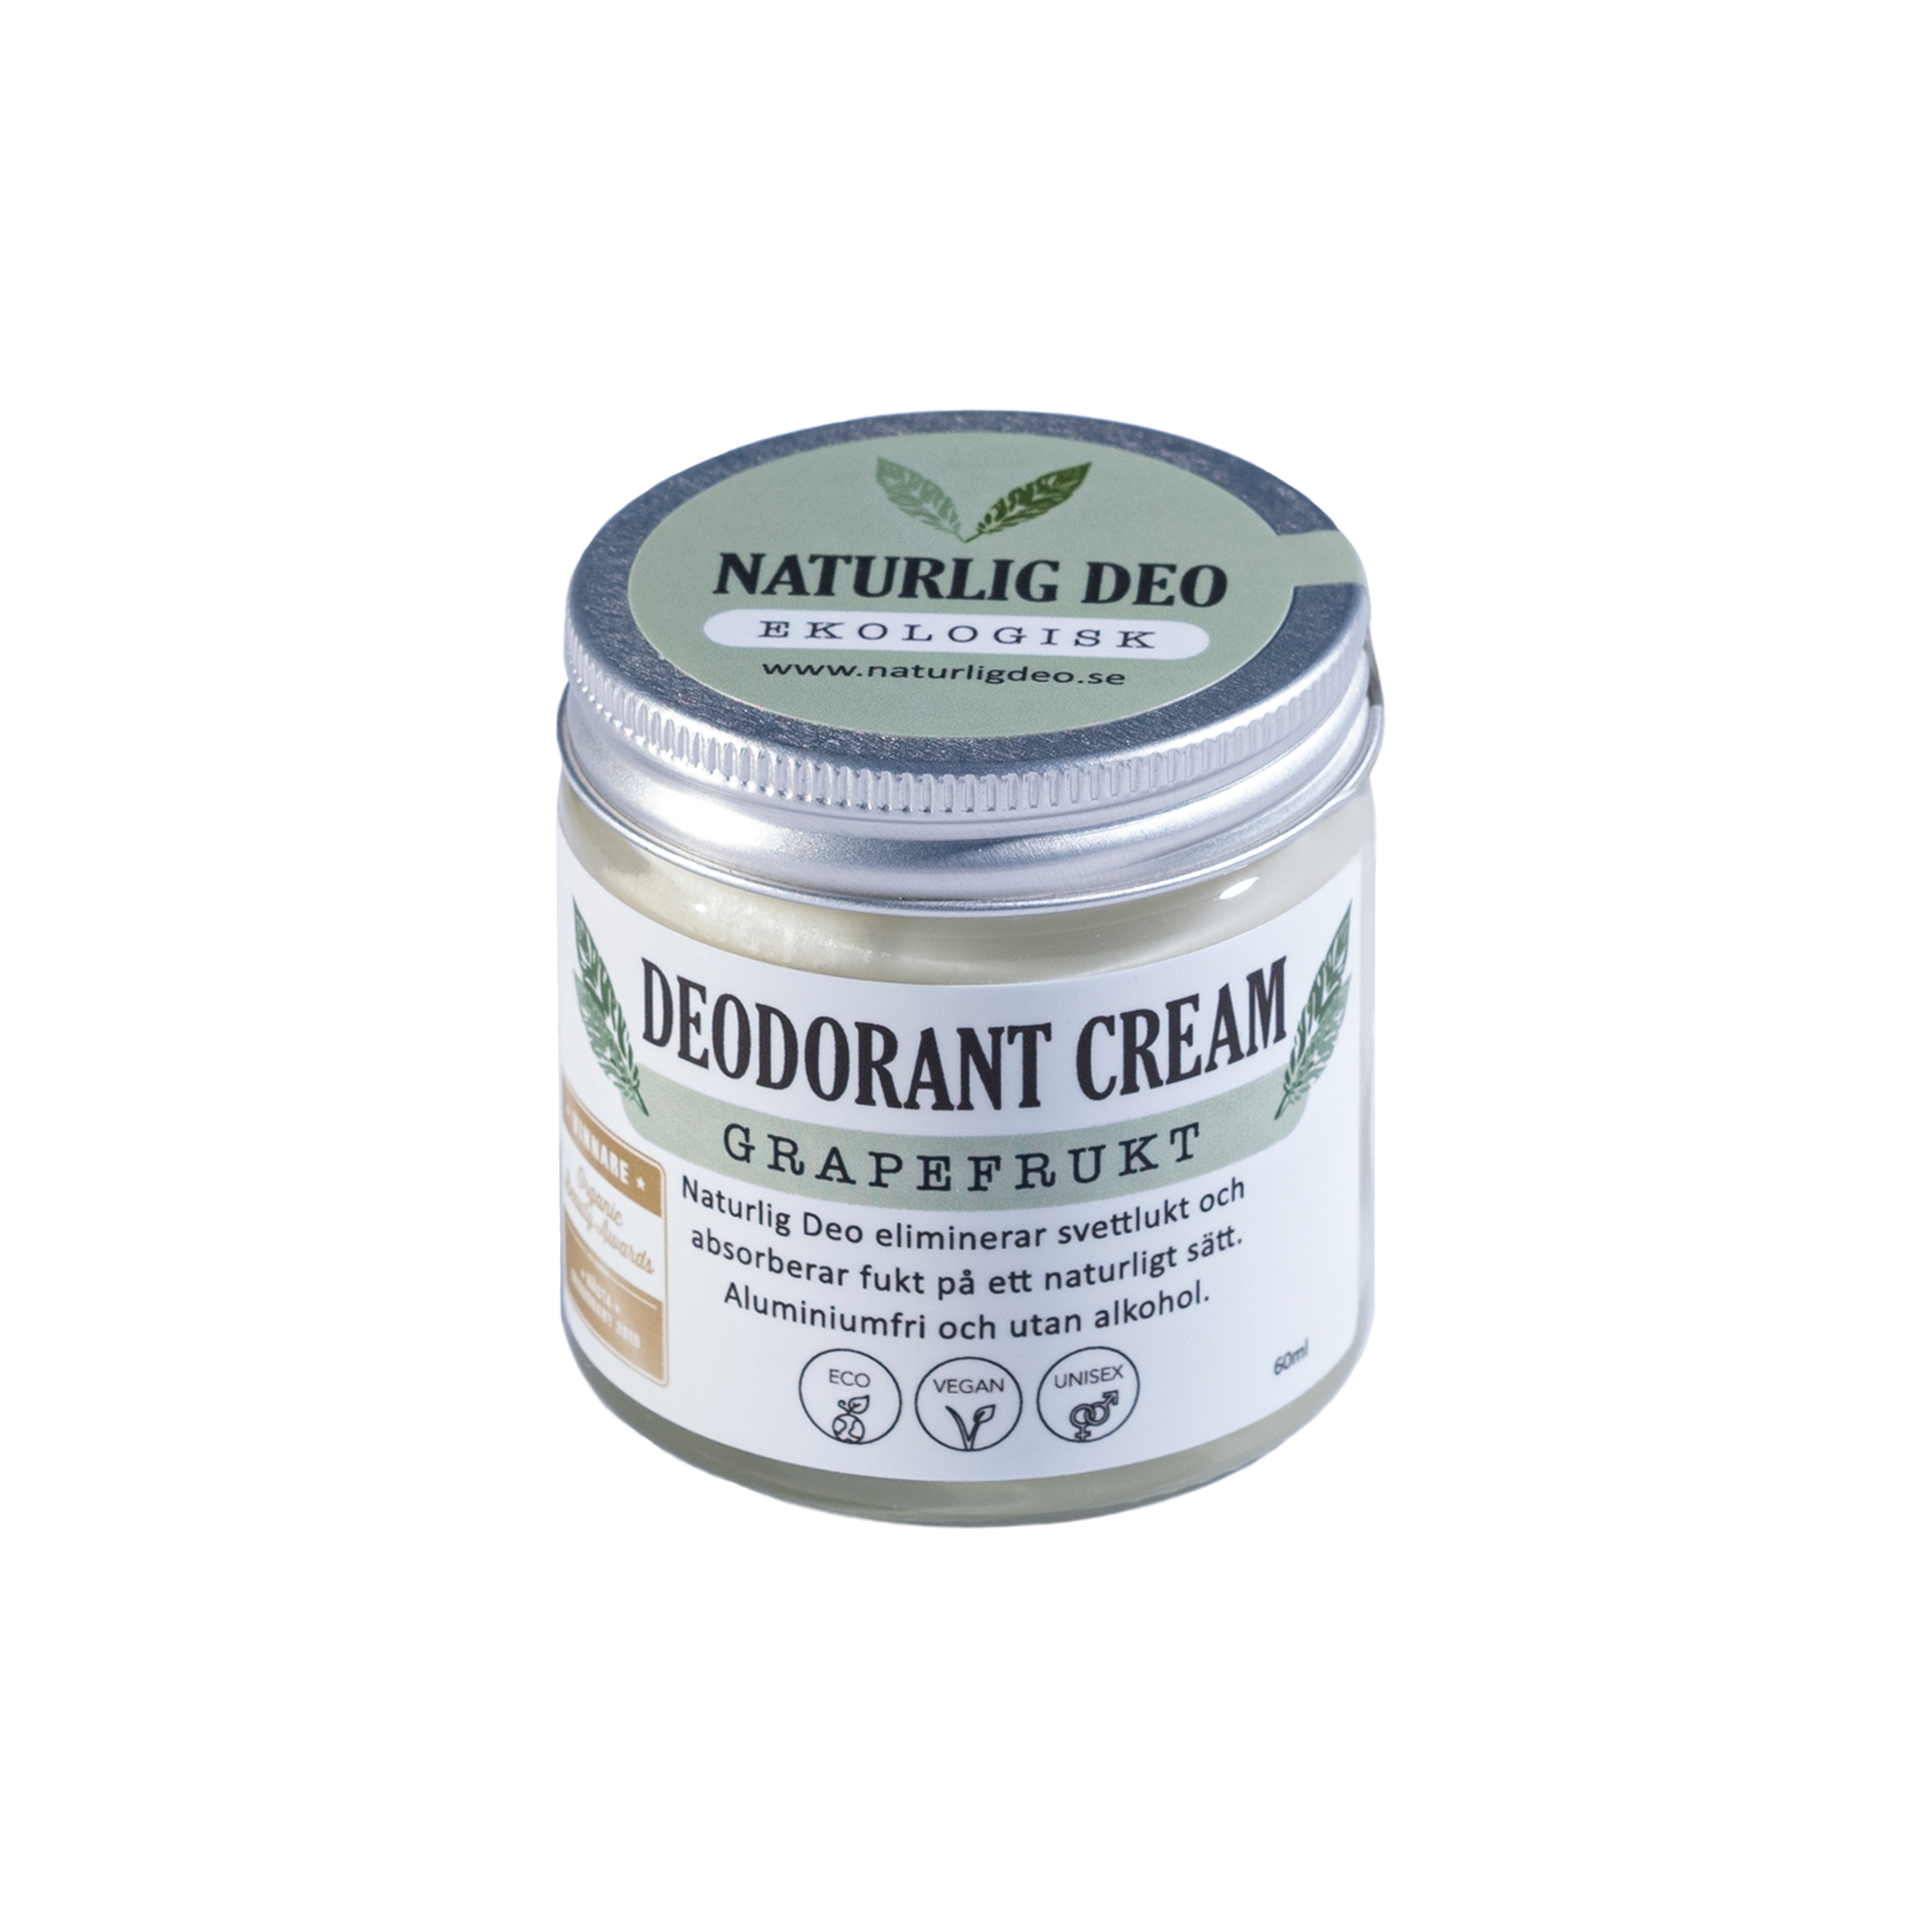 Naturlig Deo - ekologisk deodorant cream 60 ml - Grapefrukt